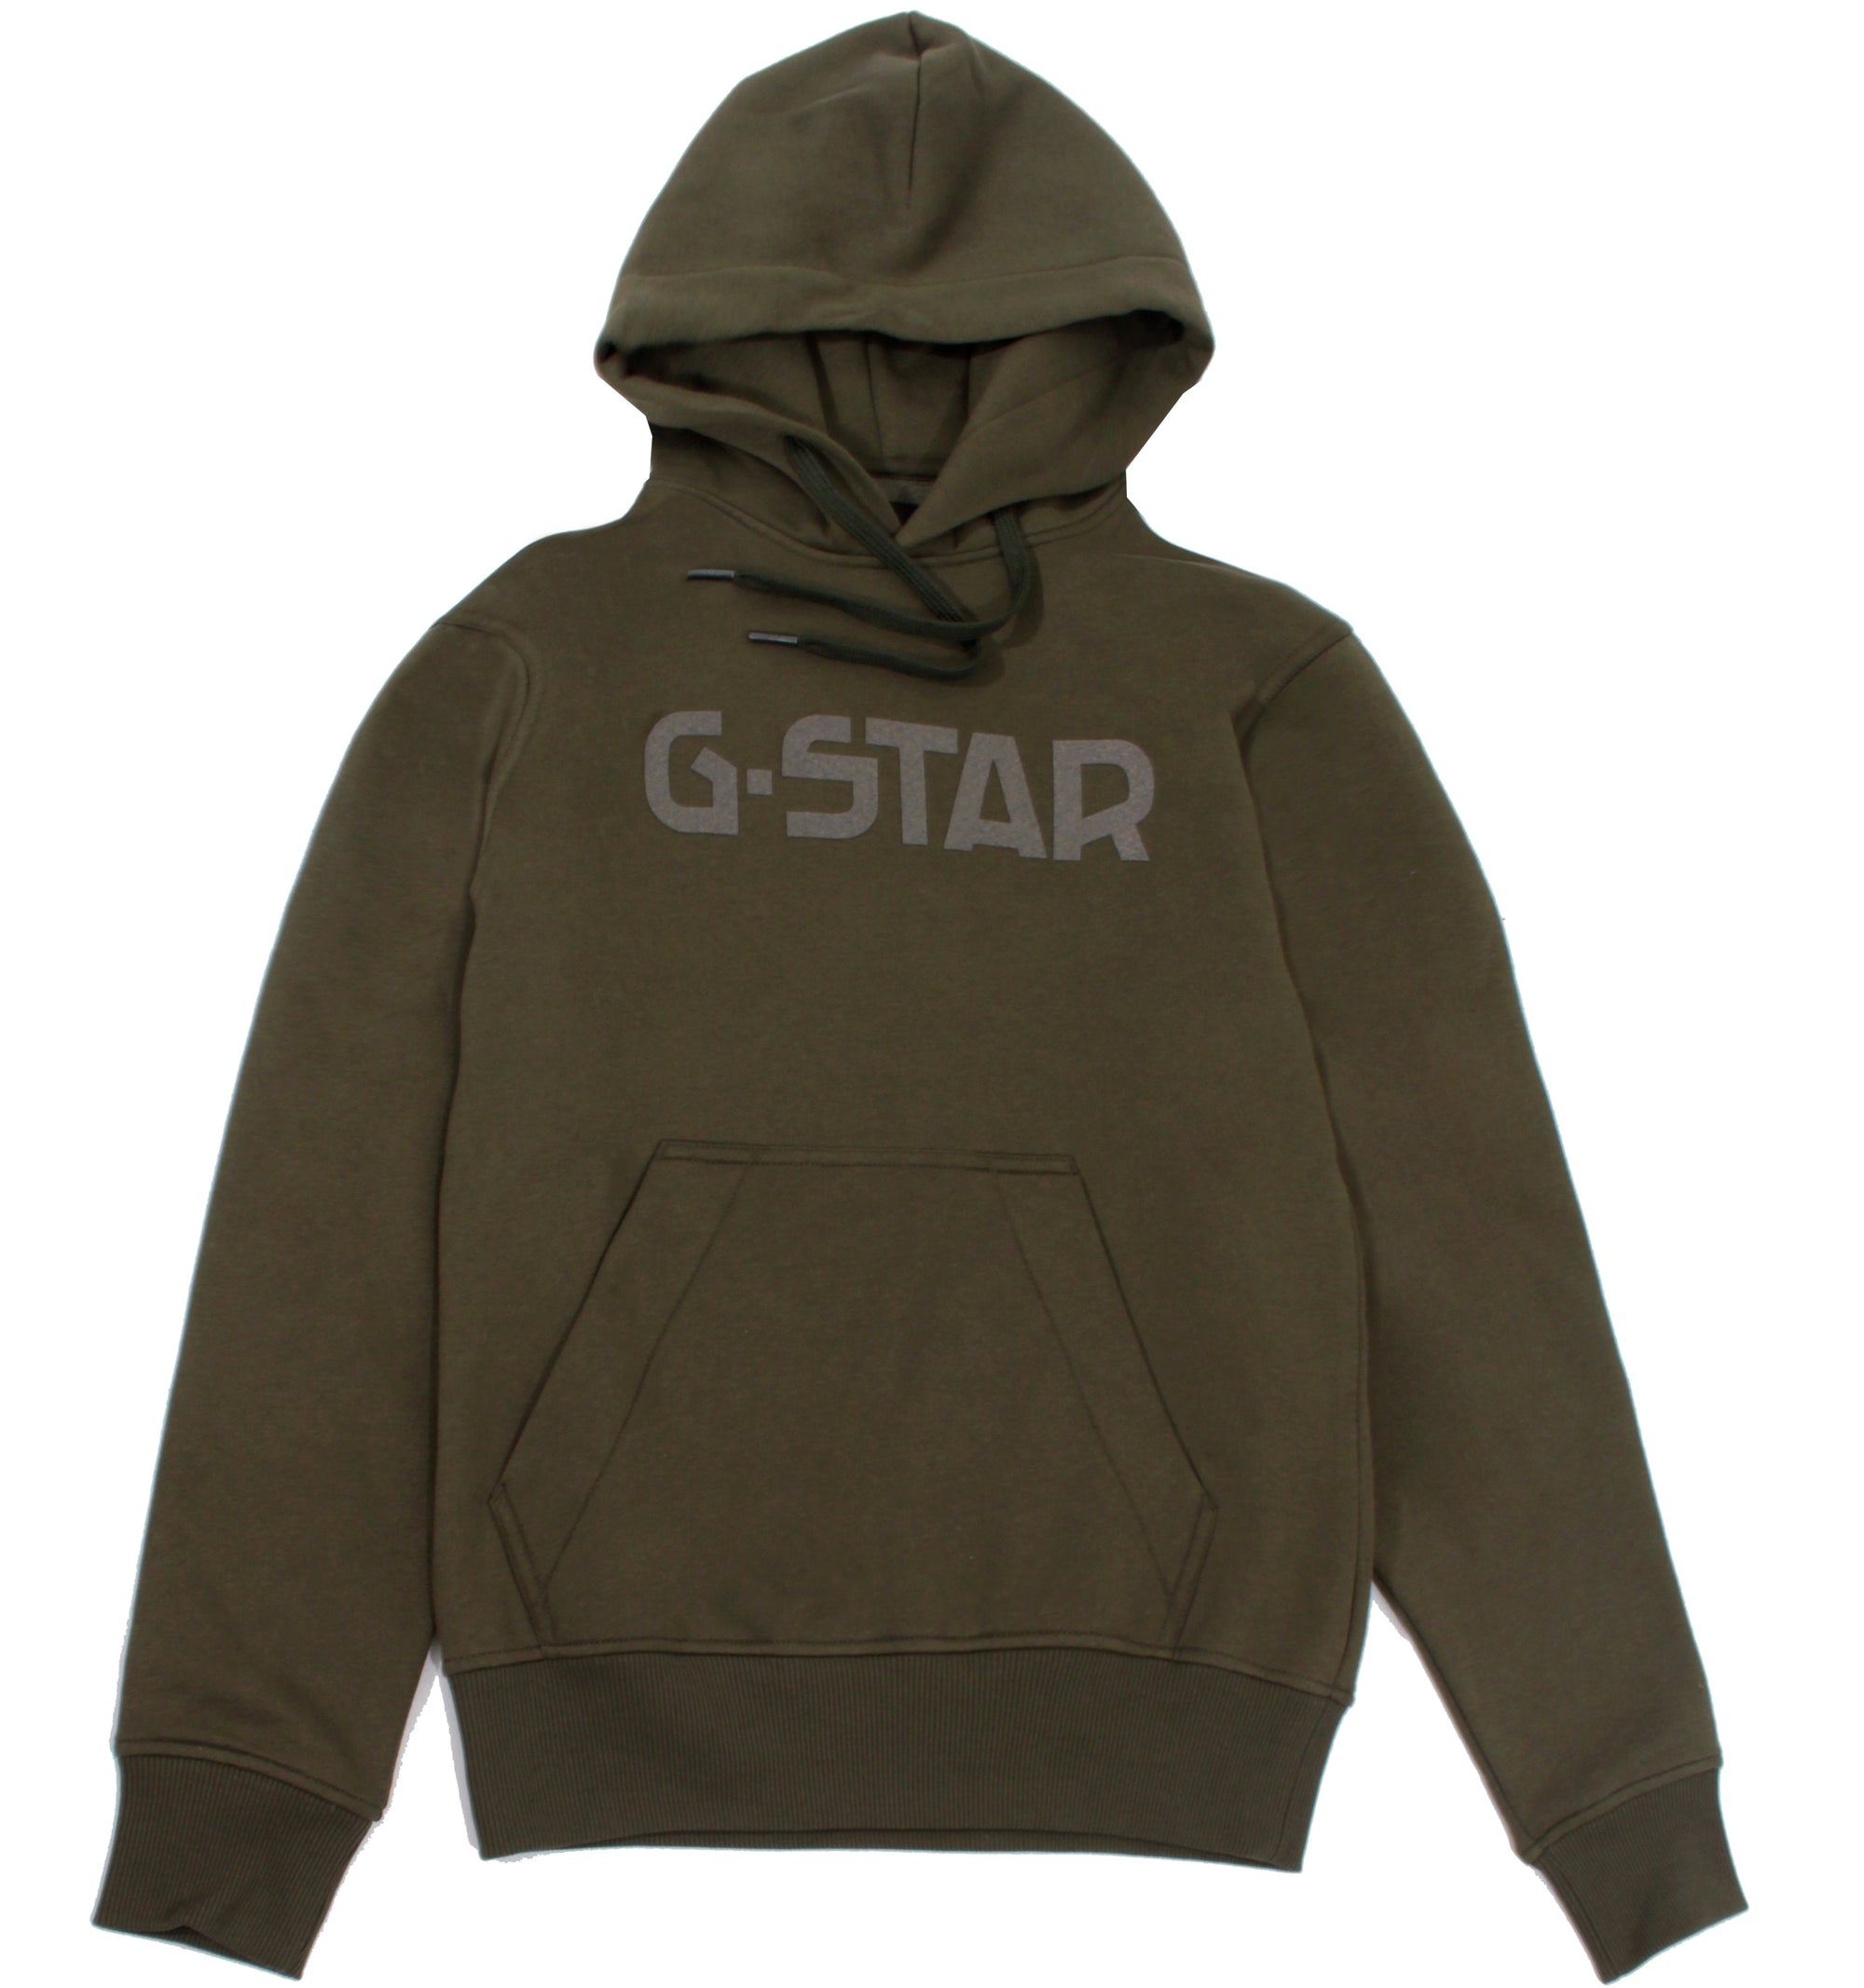 G-Star Hooded Sweater - Dk Bronze Green